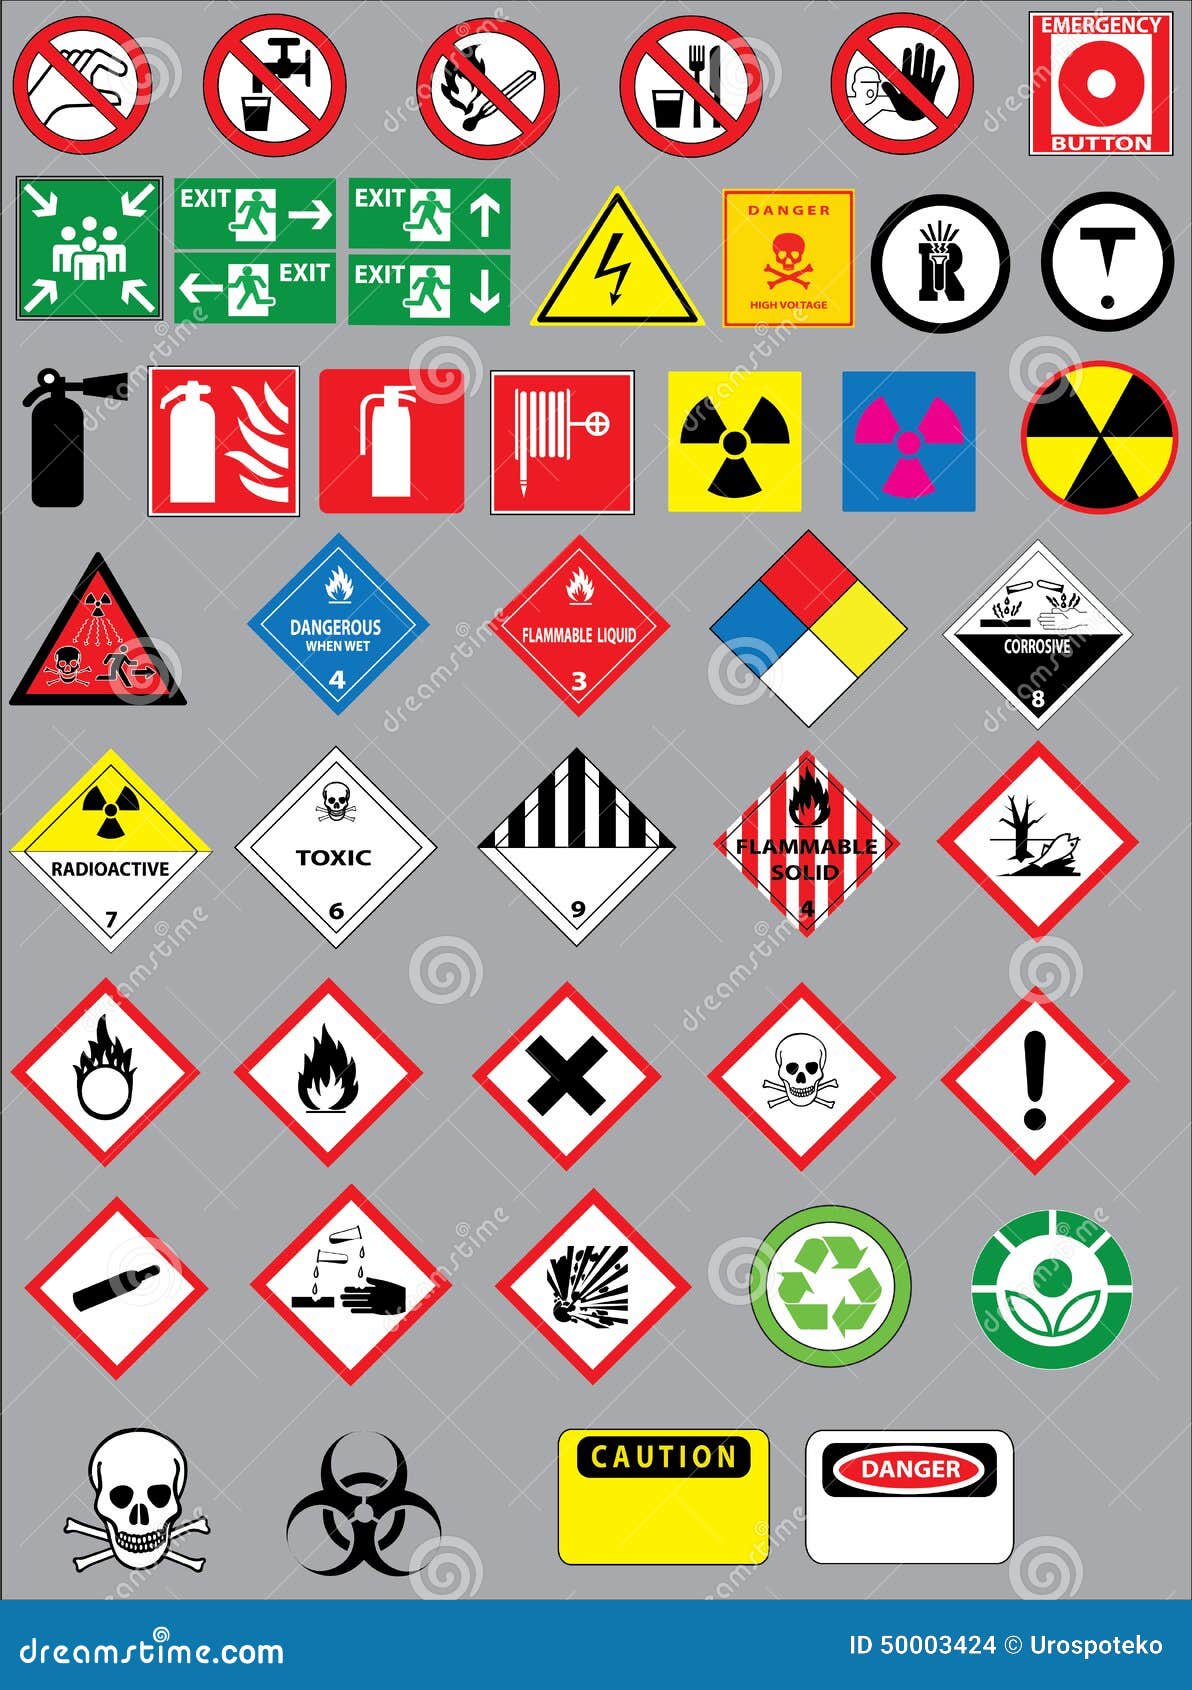 Lab Safety Symbols For Kids